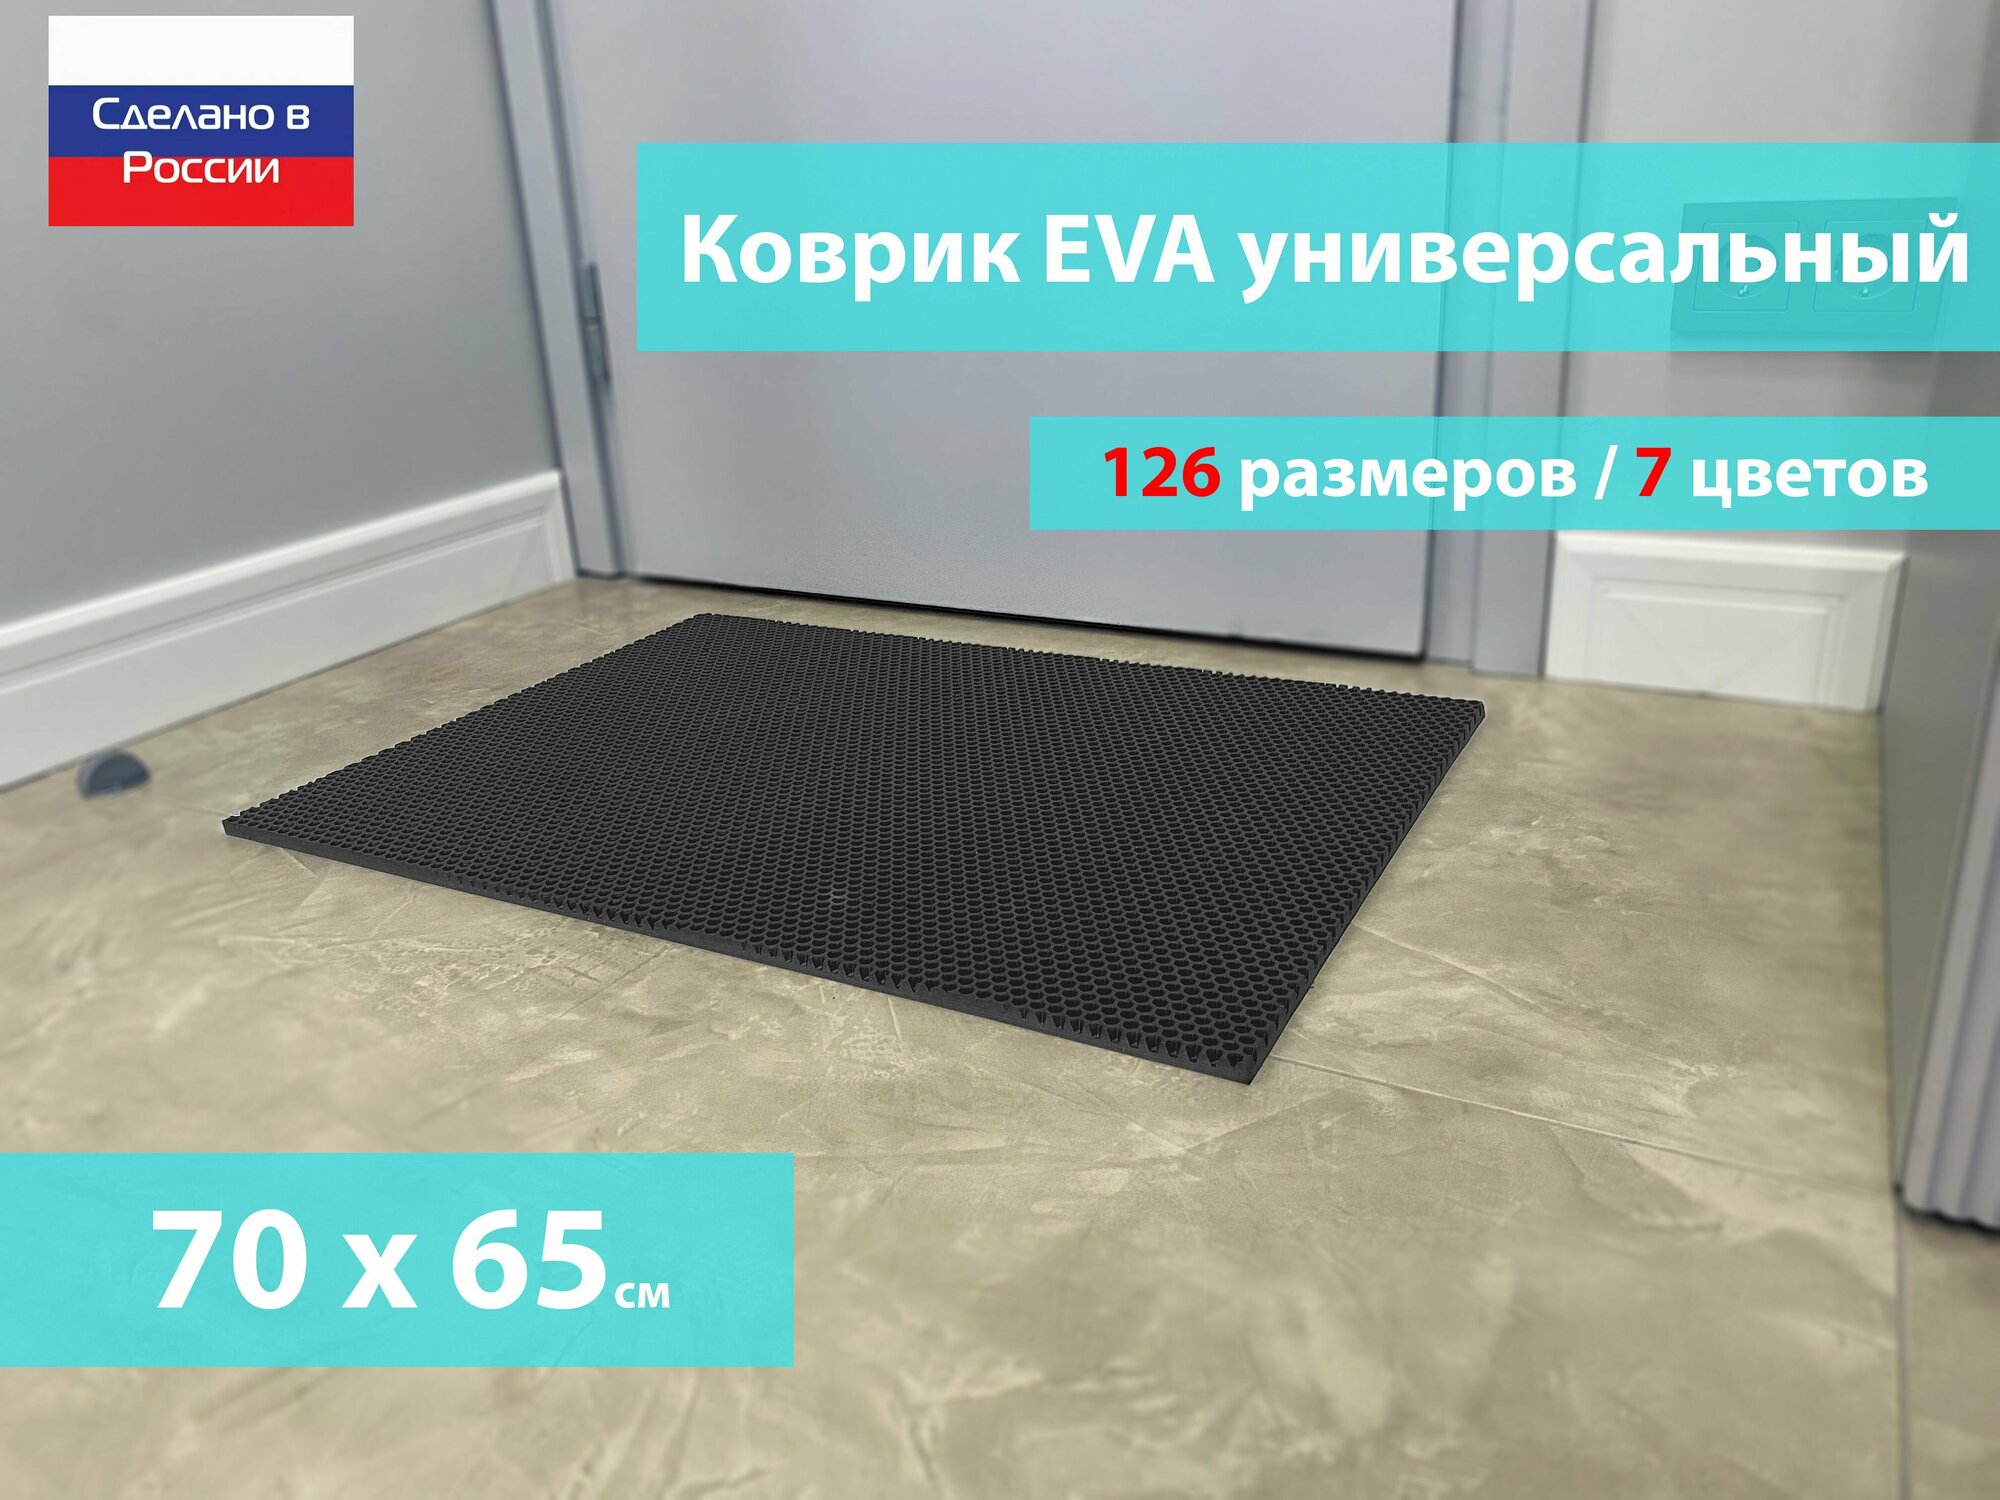 Коврик придверный EVA (ЕВА) в прихожую для обуви / Ковер ЭВА на пол перед дверью/ серый / размер 70 х 65 см